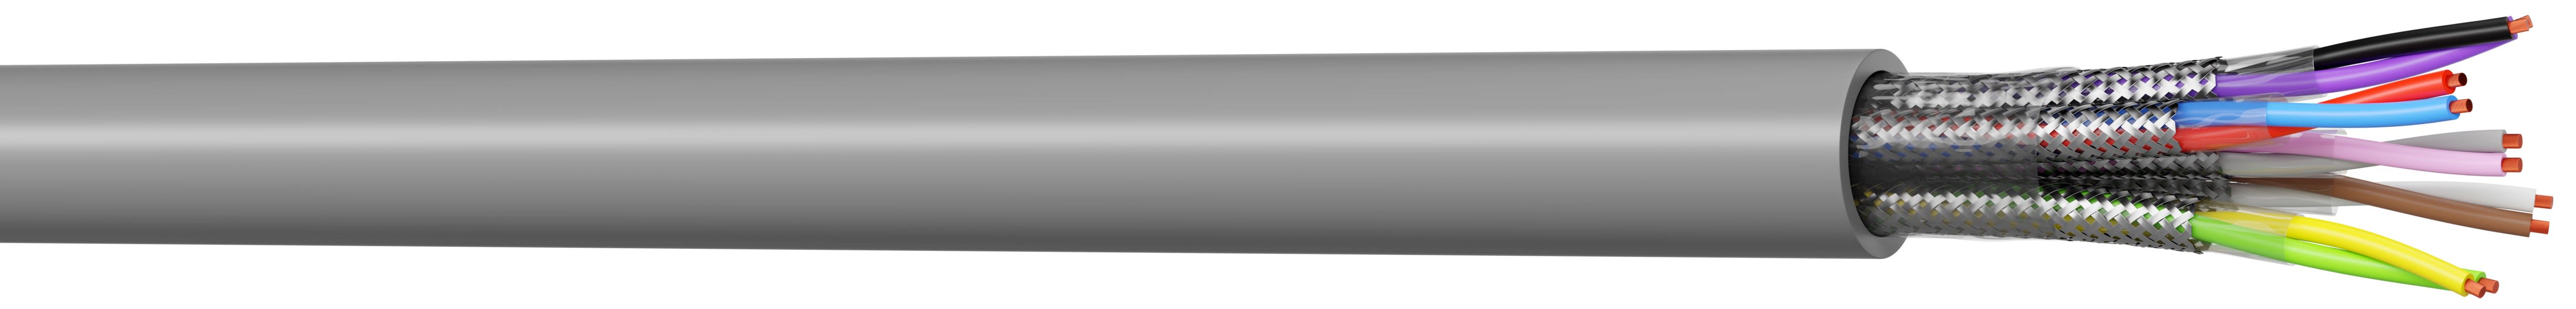 CAE Data - Câbles Hiflex-CY BP type LiYCY-BP blindés par paires code couleur DIN 47100